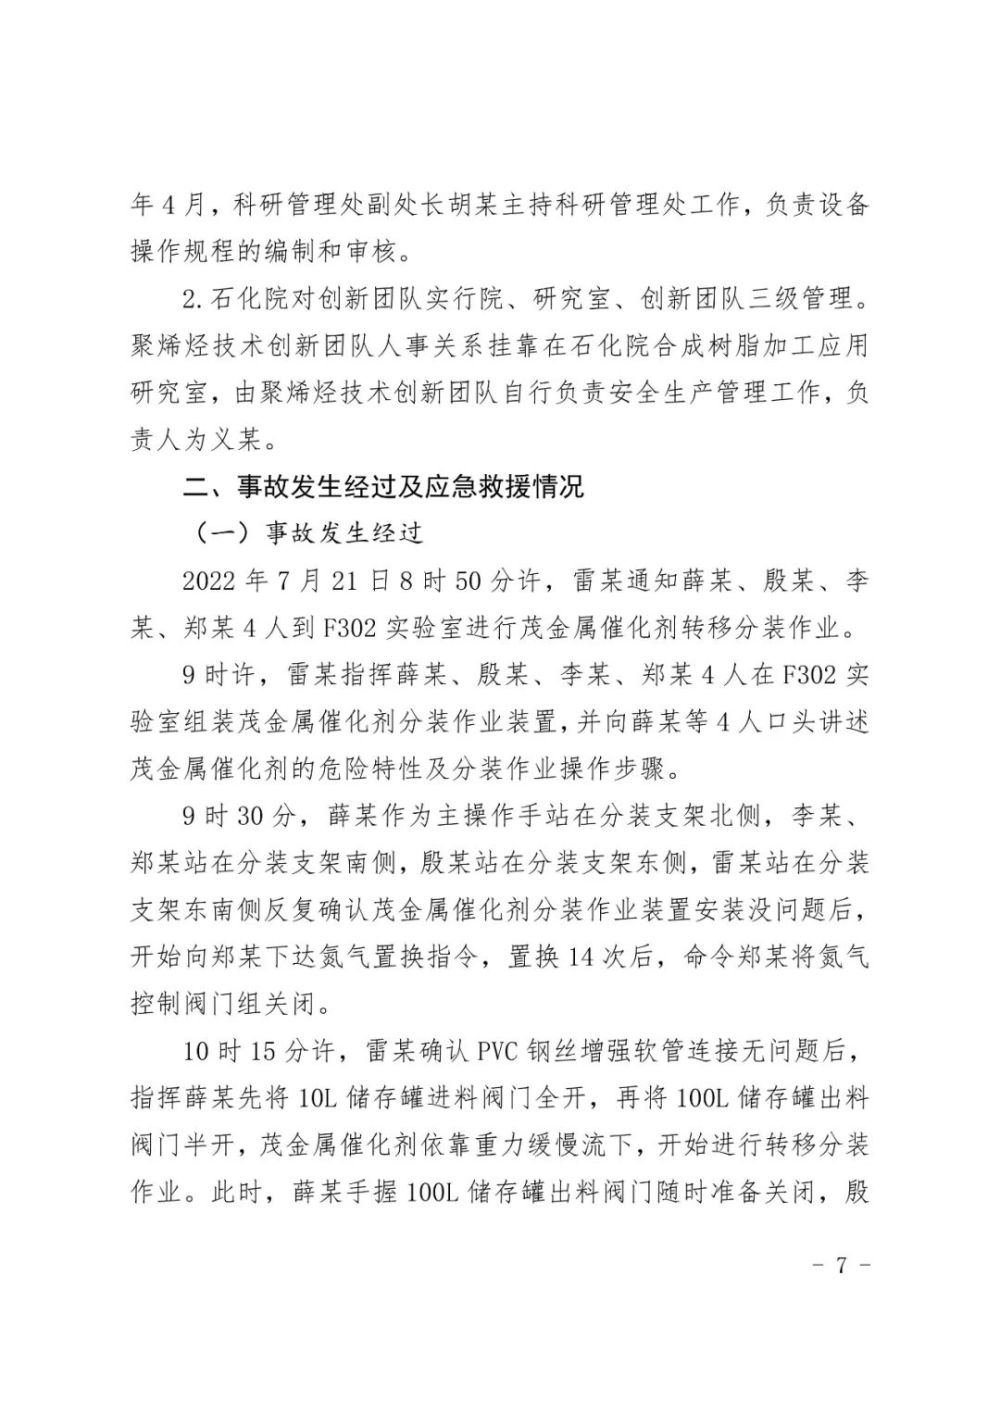 北京今日0-15时新增本土新冠感染者395例含社会面筛查人员56例新希望英语口语比赛